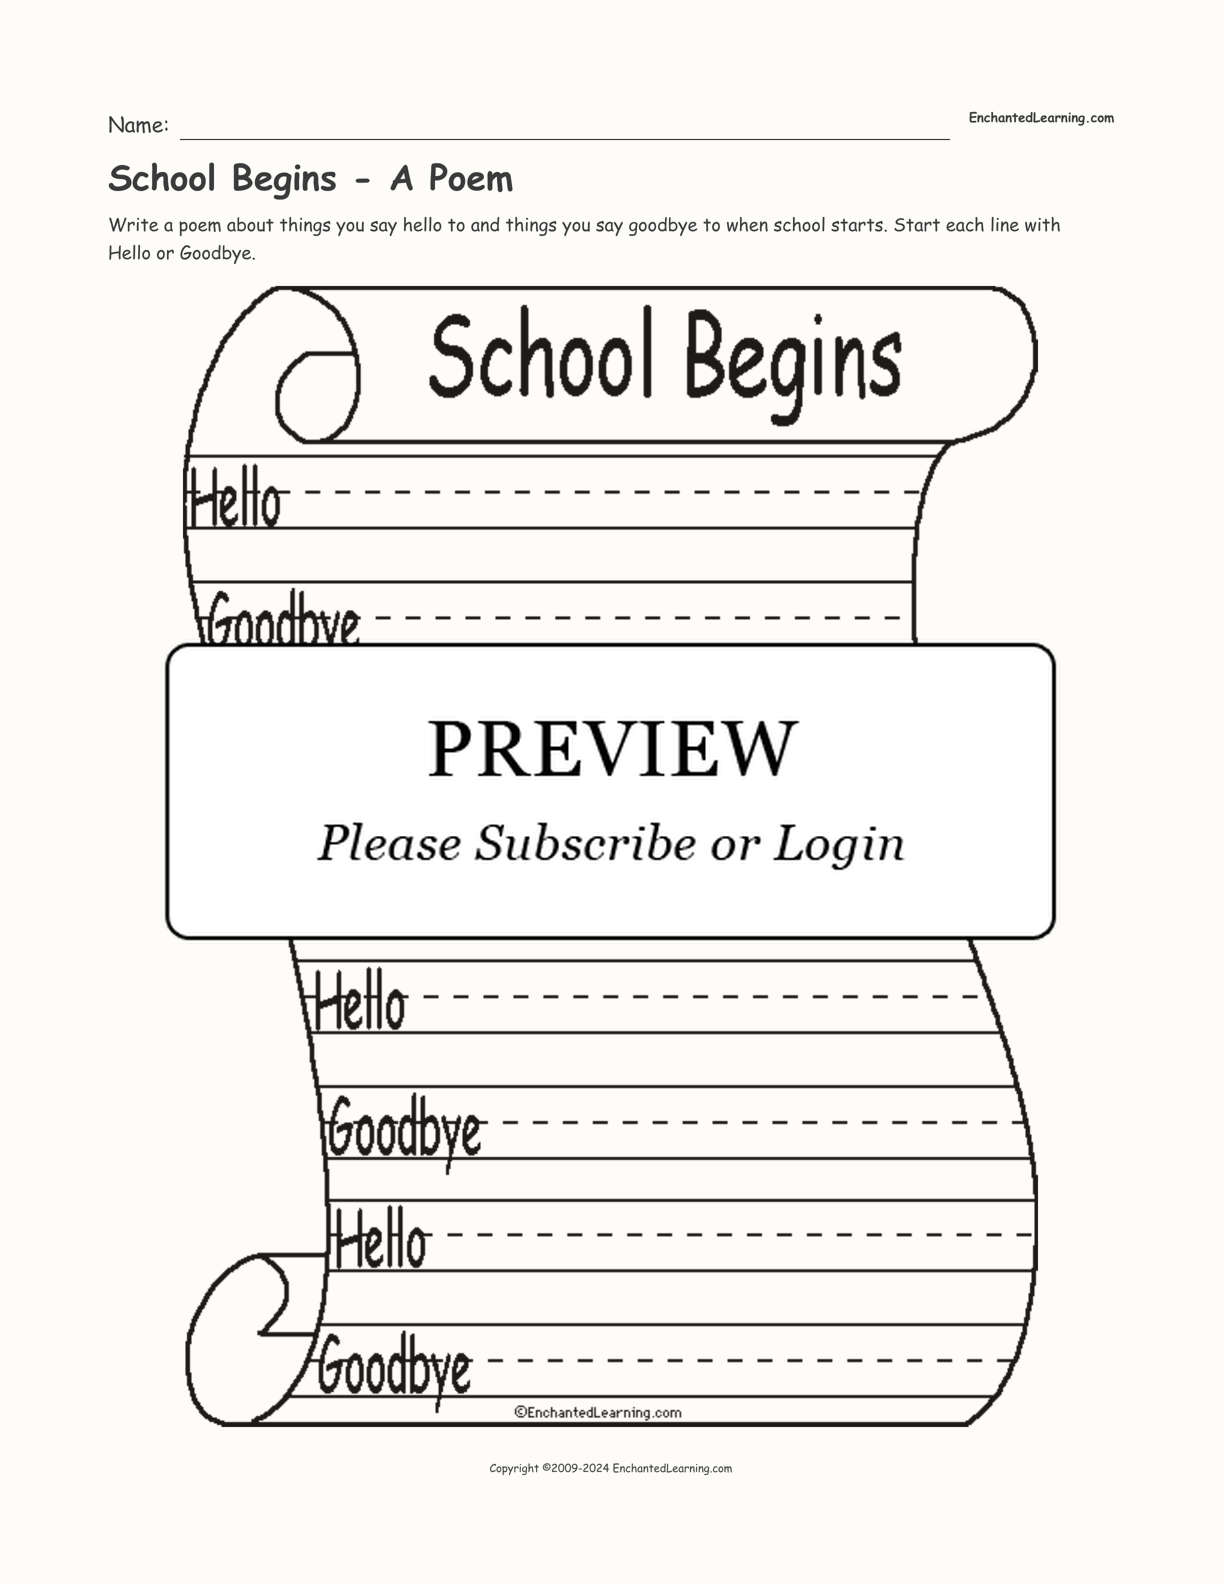 School Begins - A Poem interactive worksheet page 1